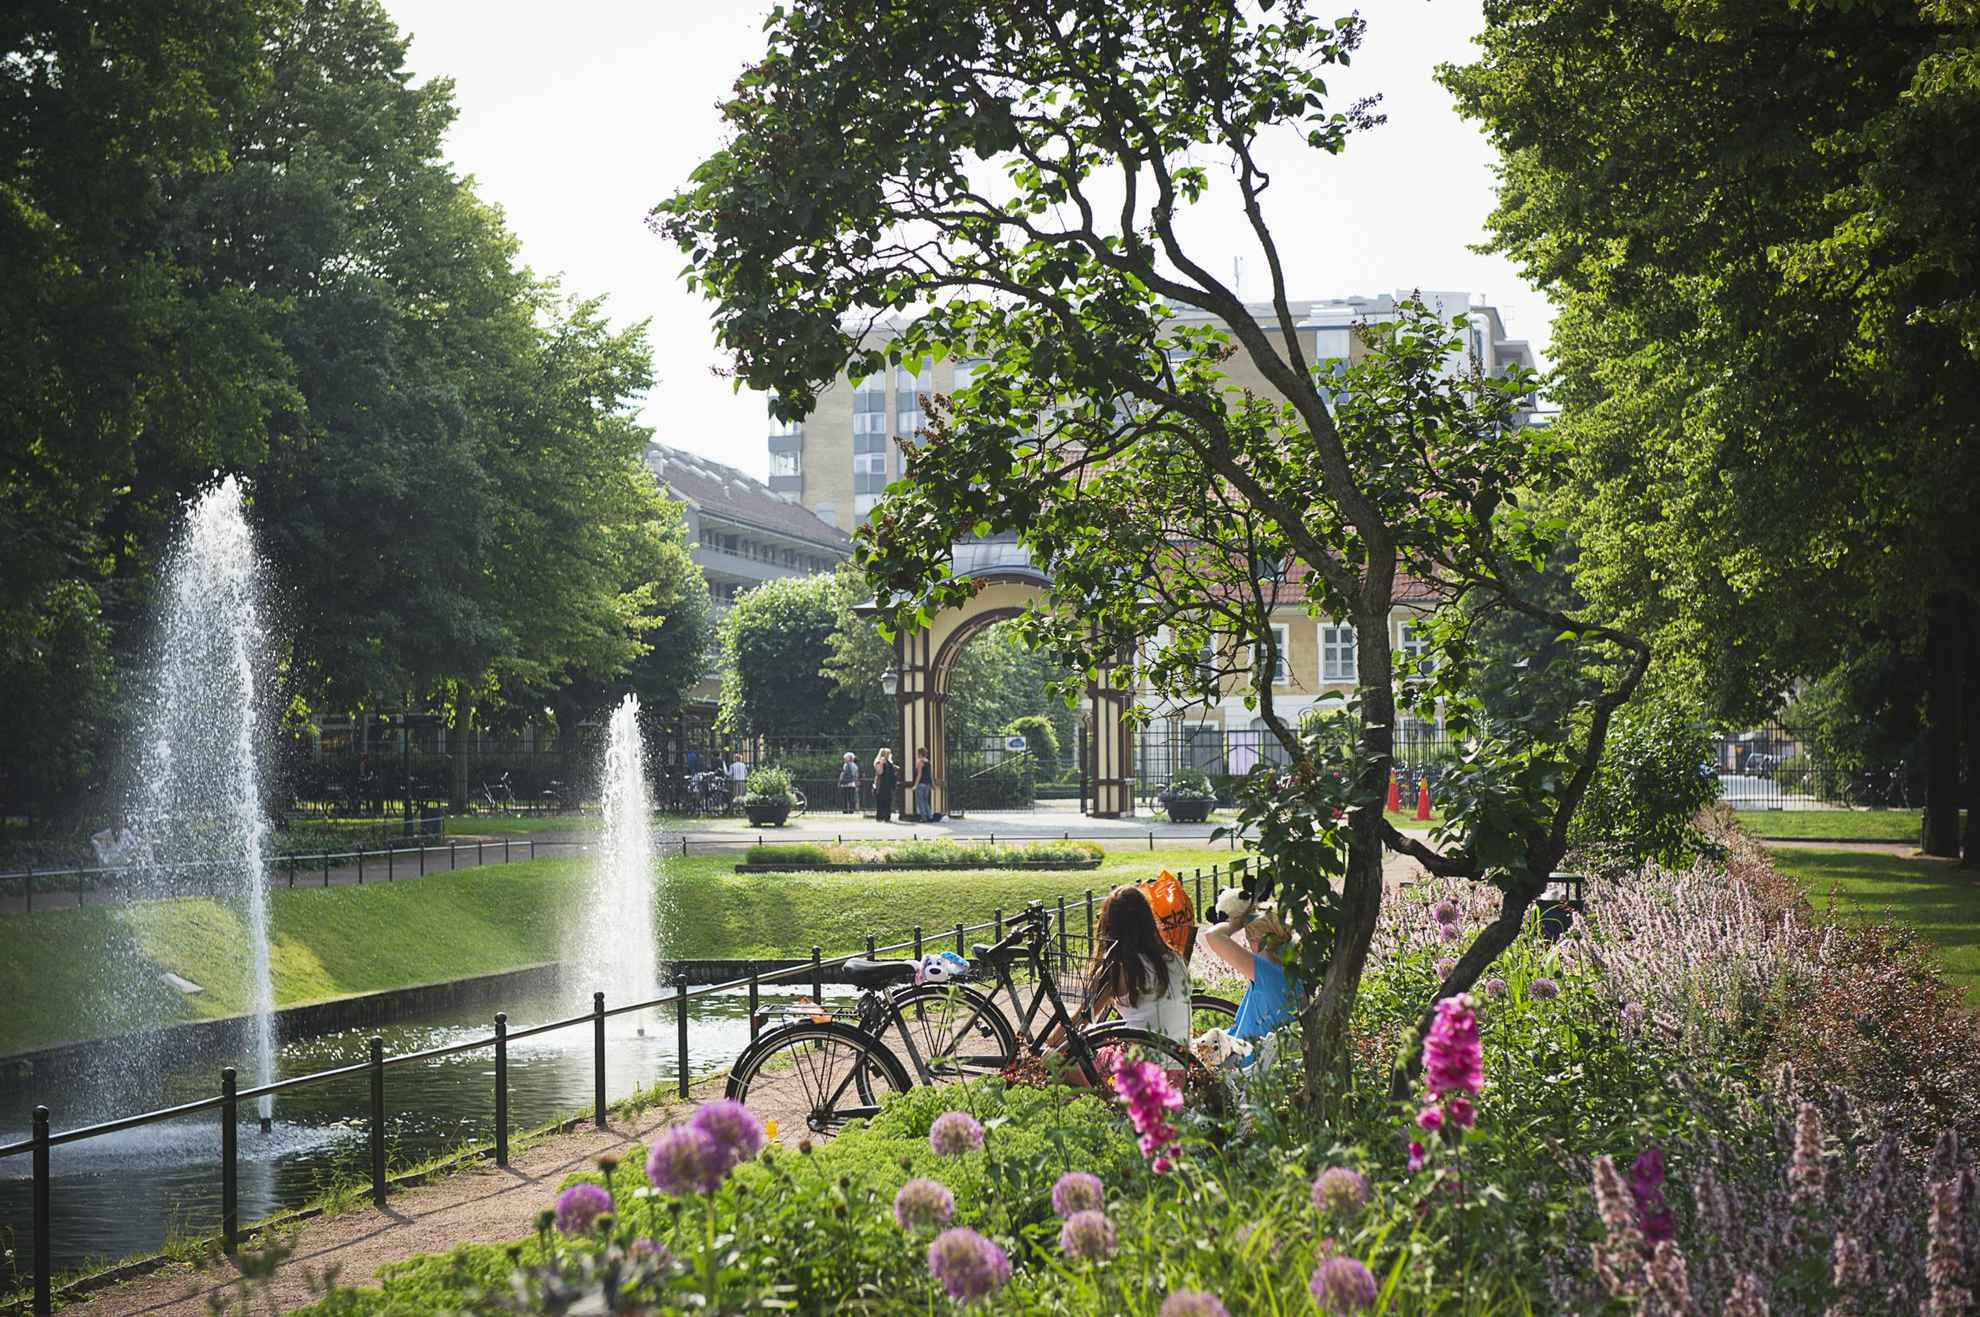 Bloemen en groen in een stadspark. Je ziet de rug van twee vrouwen zitten naast een zwembad met twee fonteinen. Op de achtergrond zie je de ingang en enkele gebouwen buiten het park.